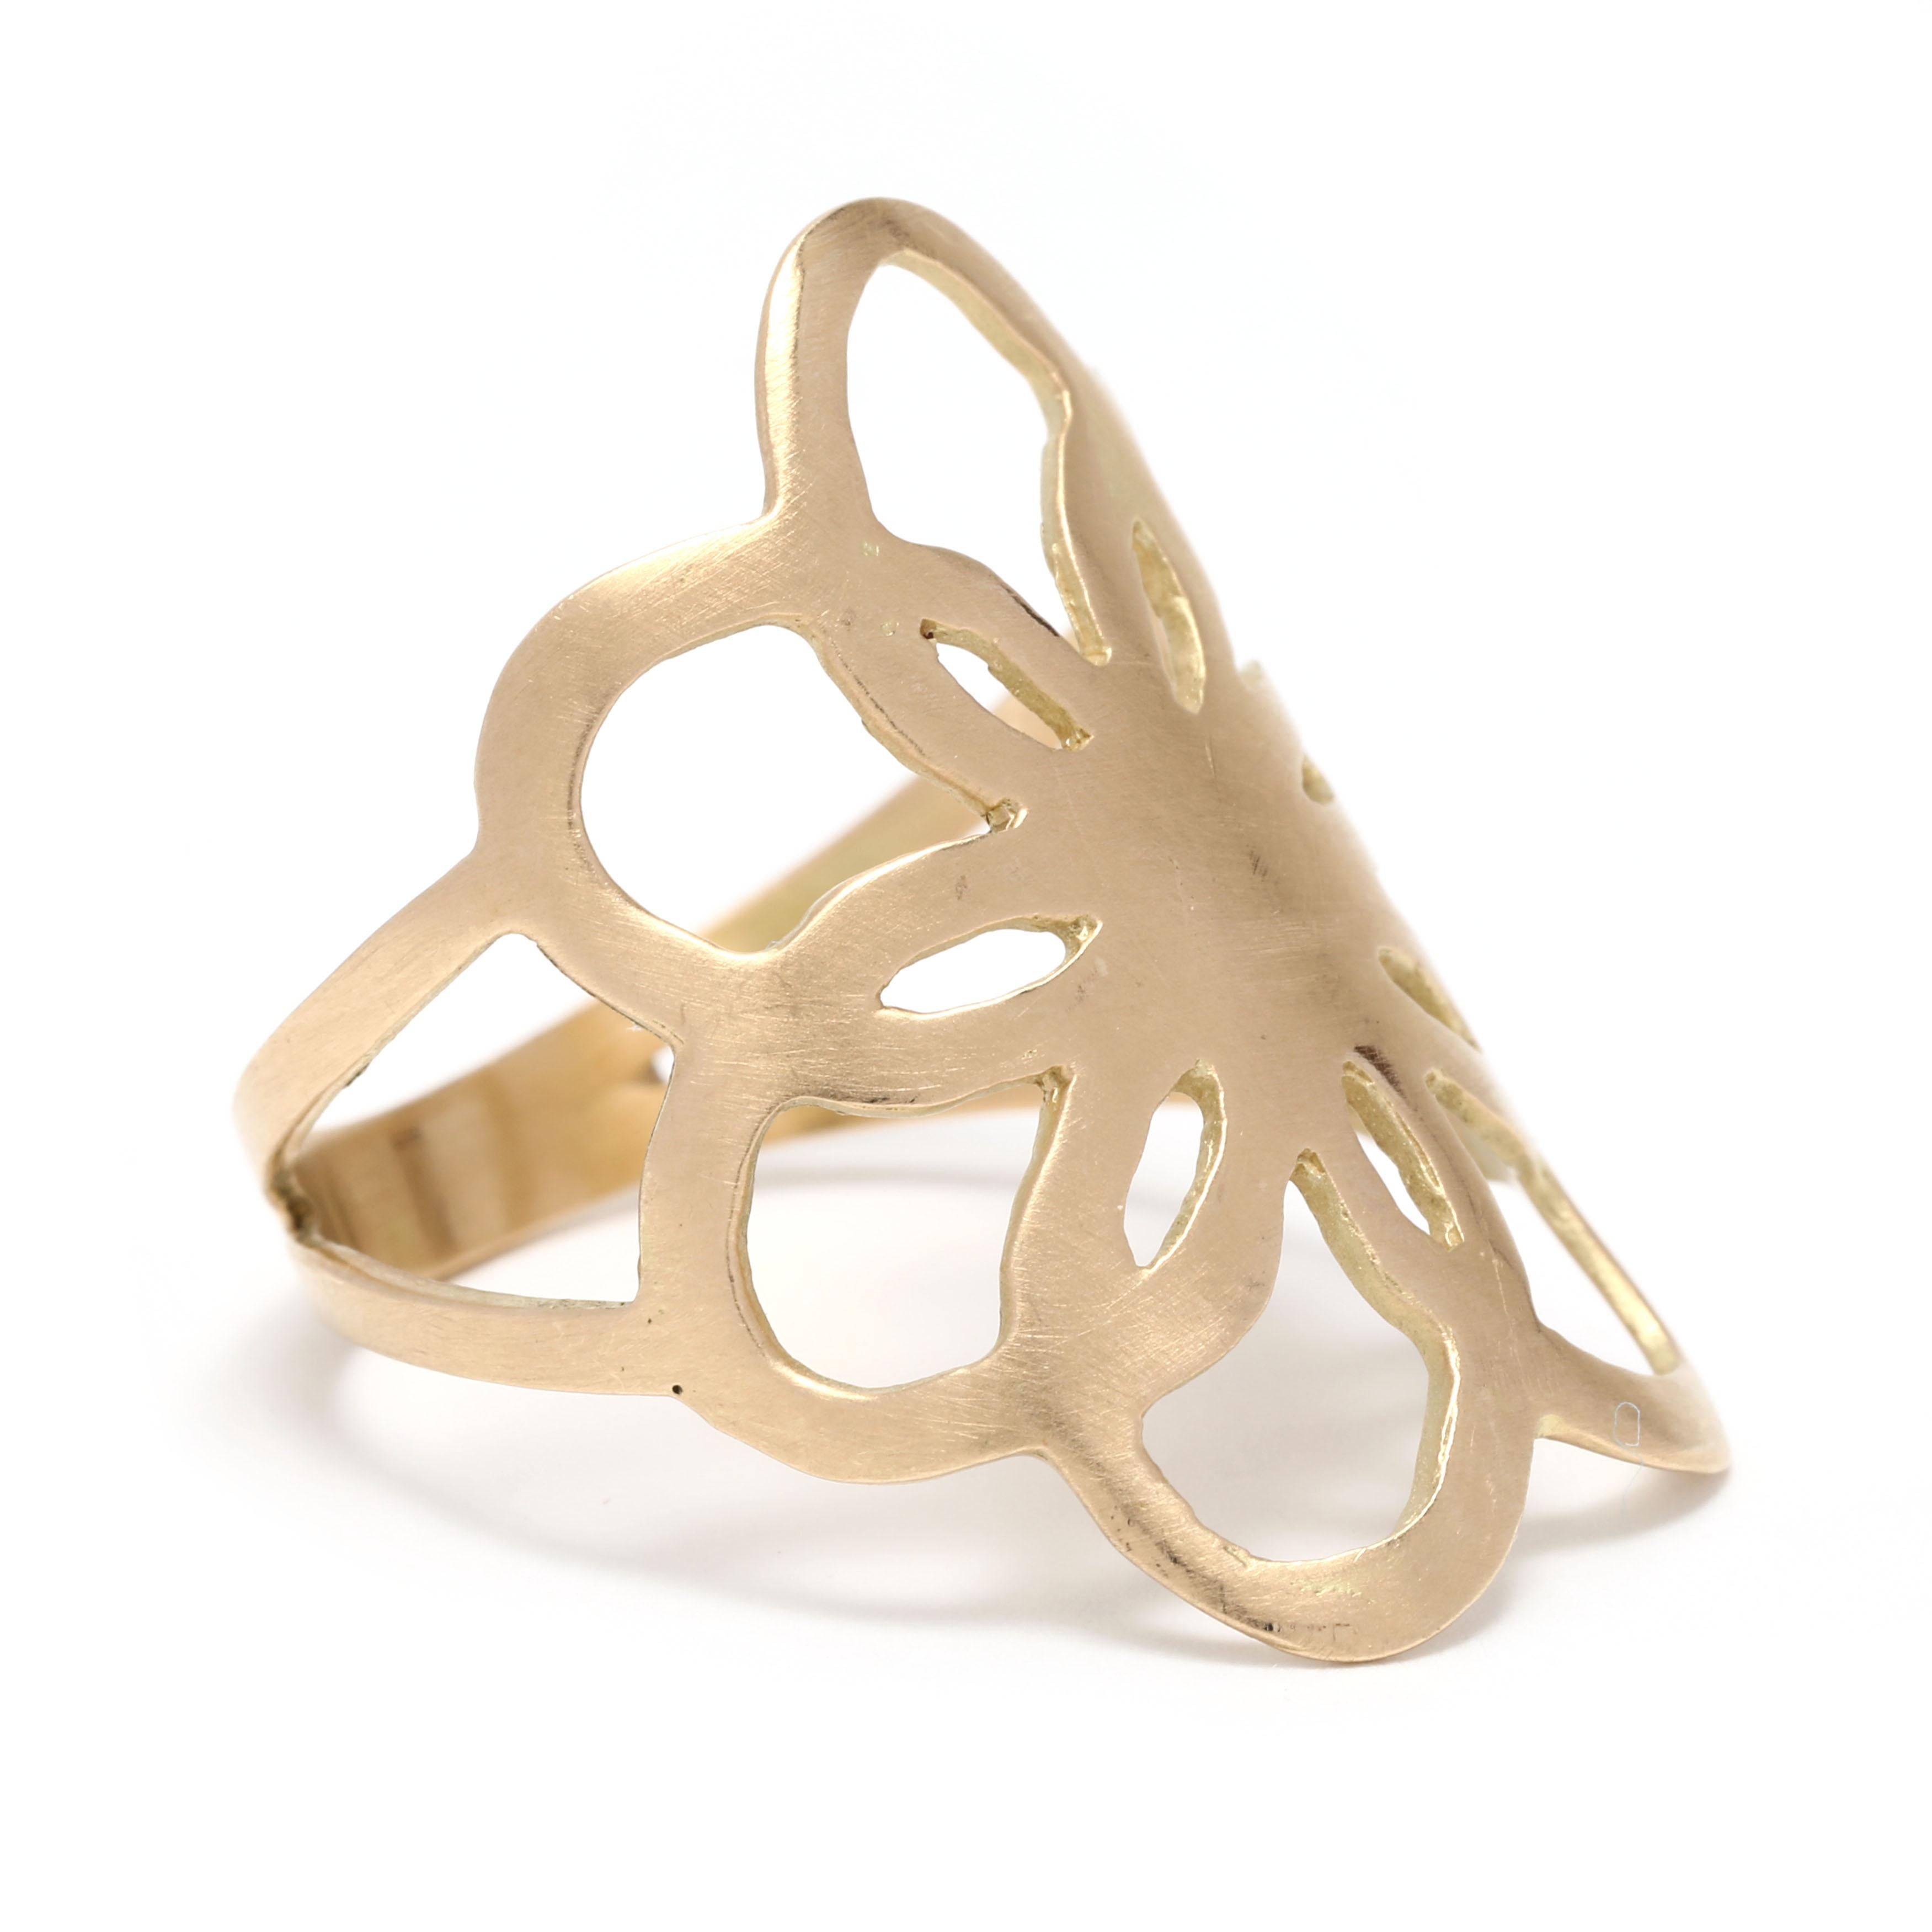 Dieser flache Statement-Ring aus 18 Karat Gelbgold bietet ein elegantes und schlichtes Design, das sich perfekt für den Alltag eignet. Der Ring verfügt über eine matte Oberfläche Blume, die etwa 0,8 cm im Durchmesser ist. Die Ringgröße beträgt 7,25